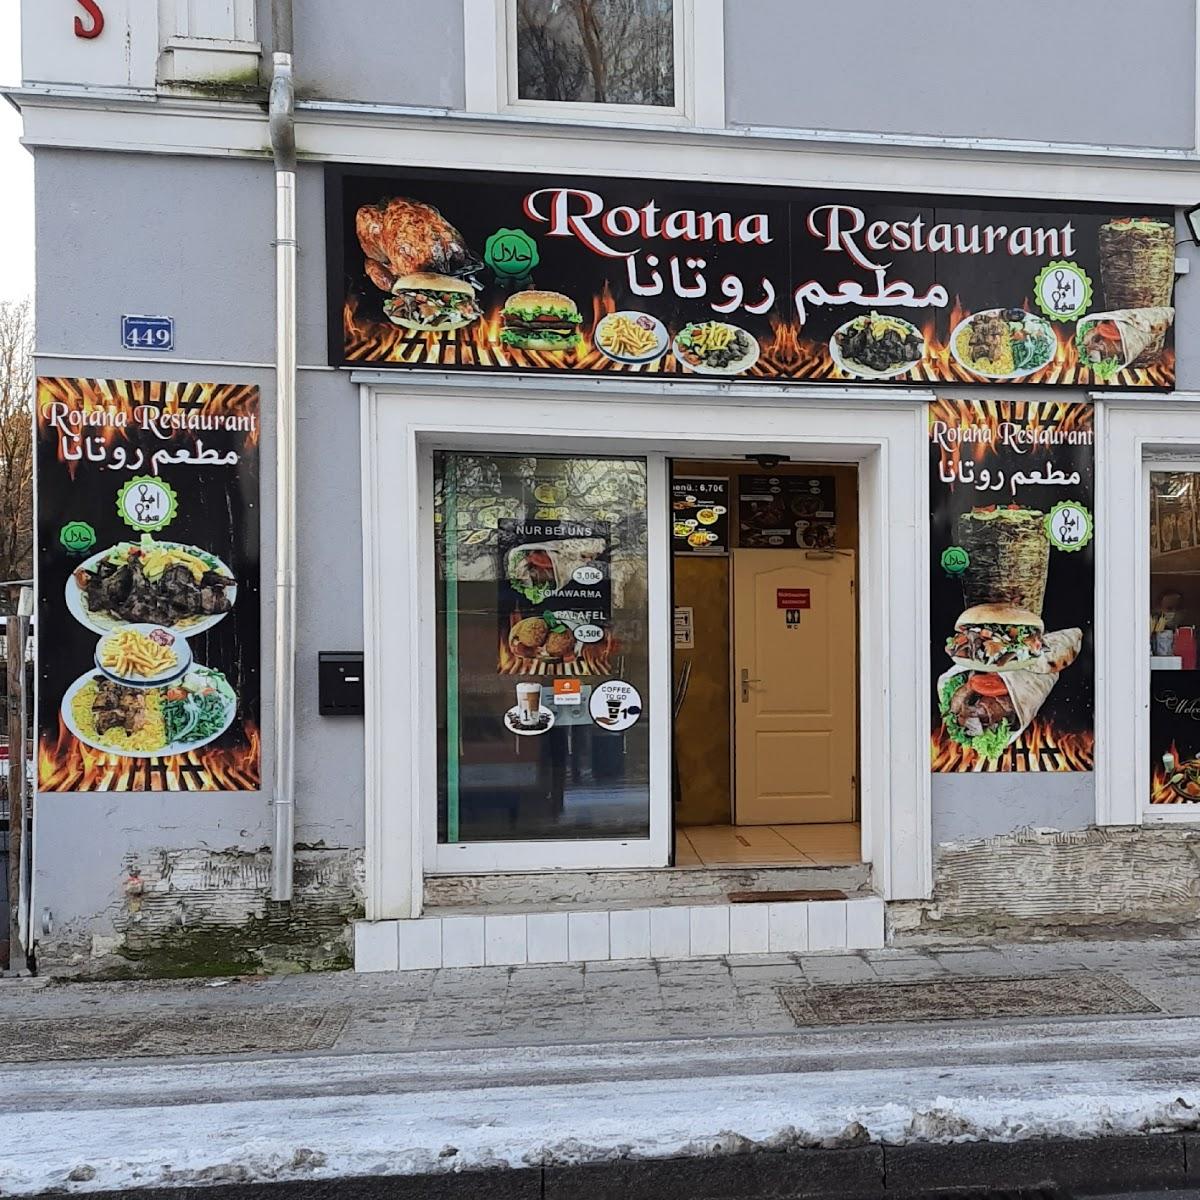 Restaurant "Rotana Restaurant - Die besten damazenischen Speisen" in München